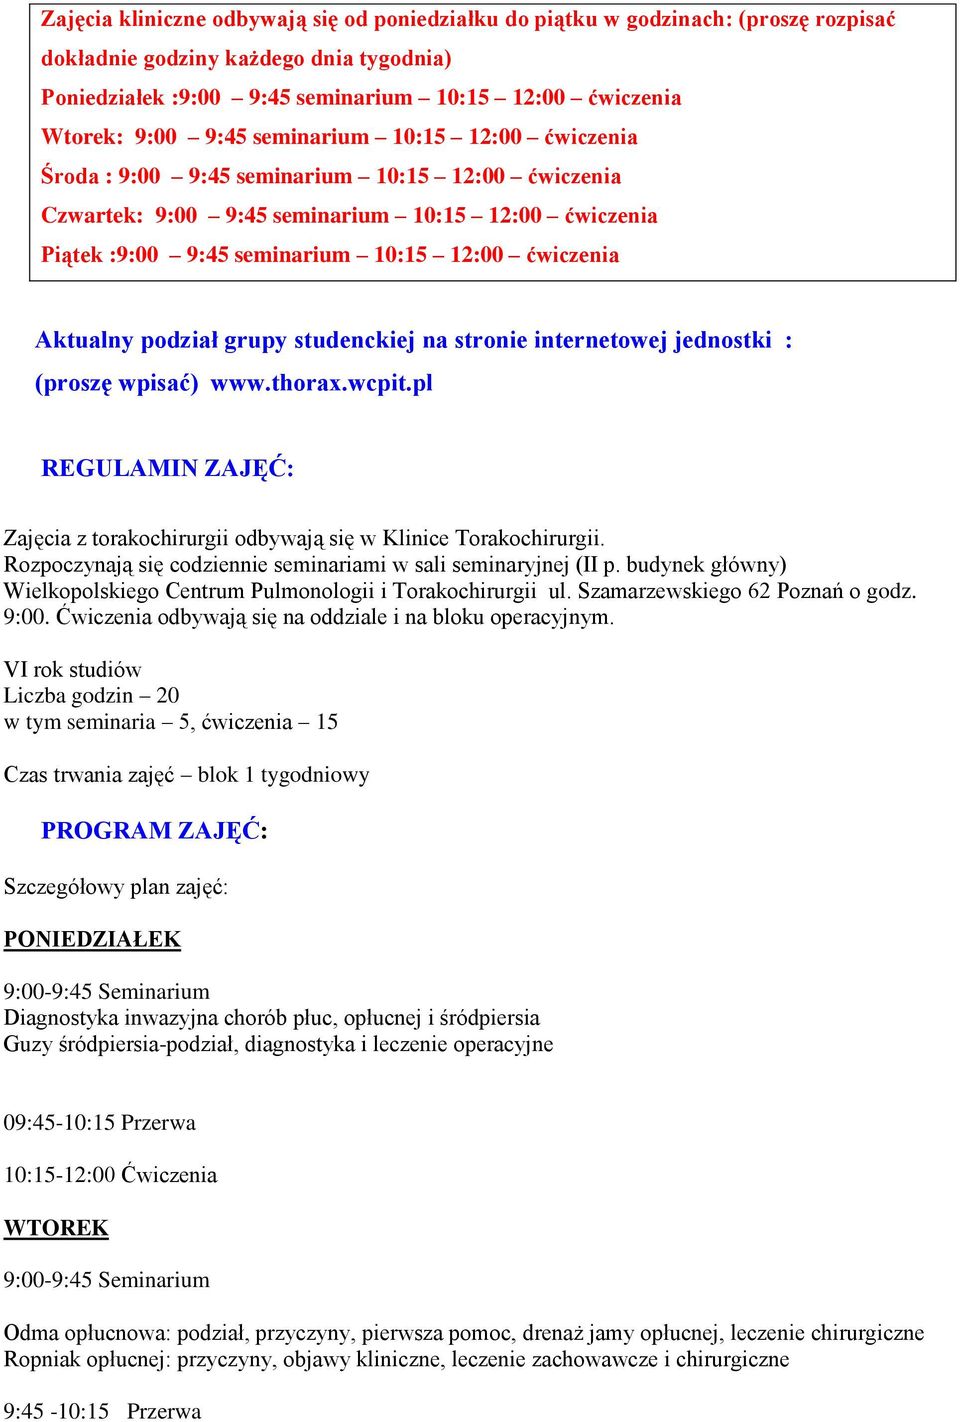 Aktualny podział grupy studenckiej na stronie internetowej jednostki : (proszę wpisać) www.thorax.wcpit.pl REGULAMIN ZAJĘĆ: Zajęcia z torakochirurgii odbywają się w Klinice Torakochirurgii.